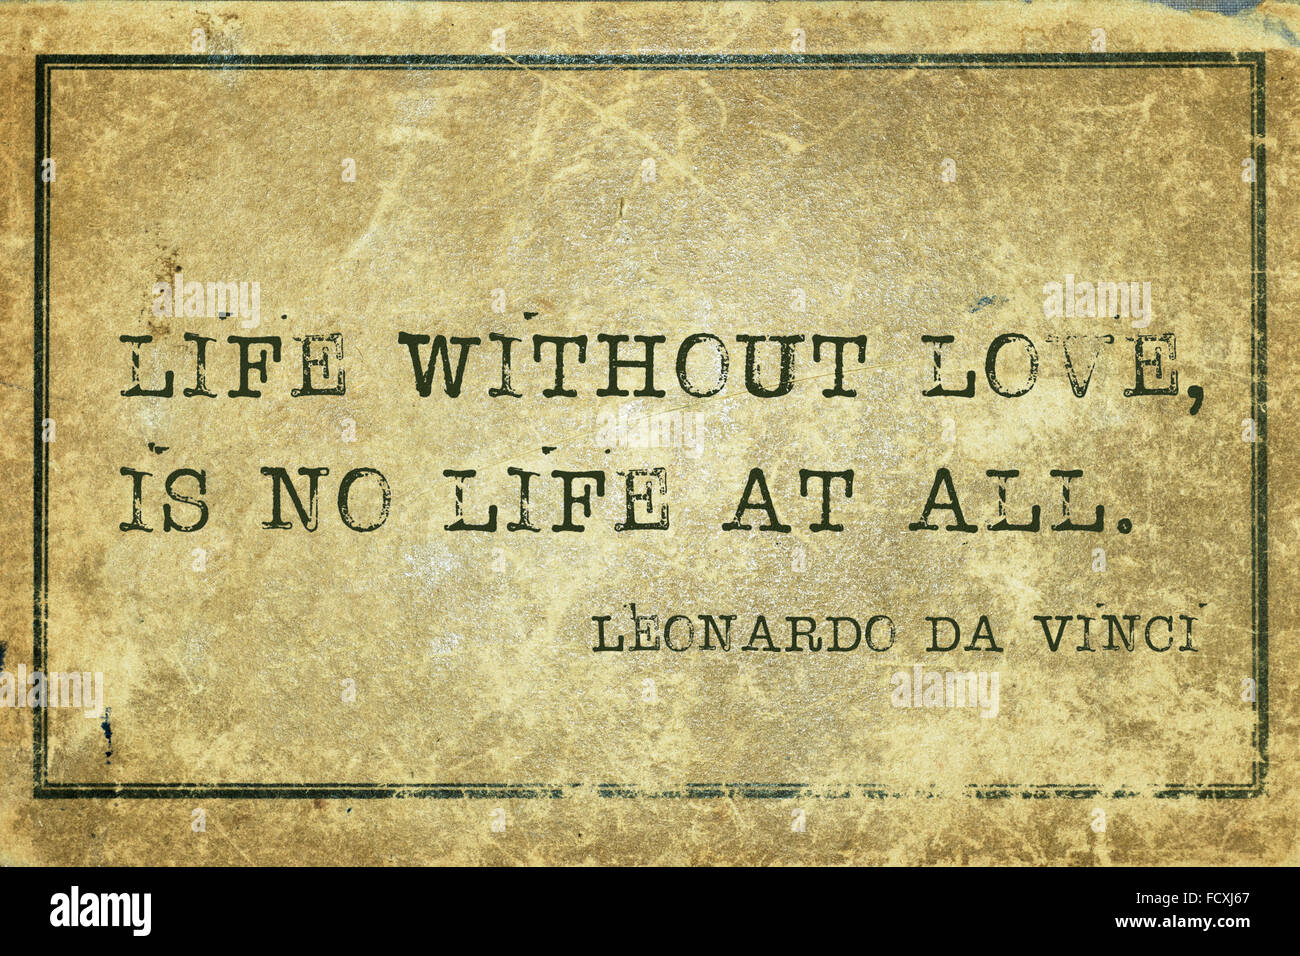 La vita senza amore non è vita a tutti - antica artista italiano Leonardo da Vinci preventivo stampato su grunge cartone vintage Foto Stock